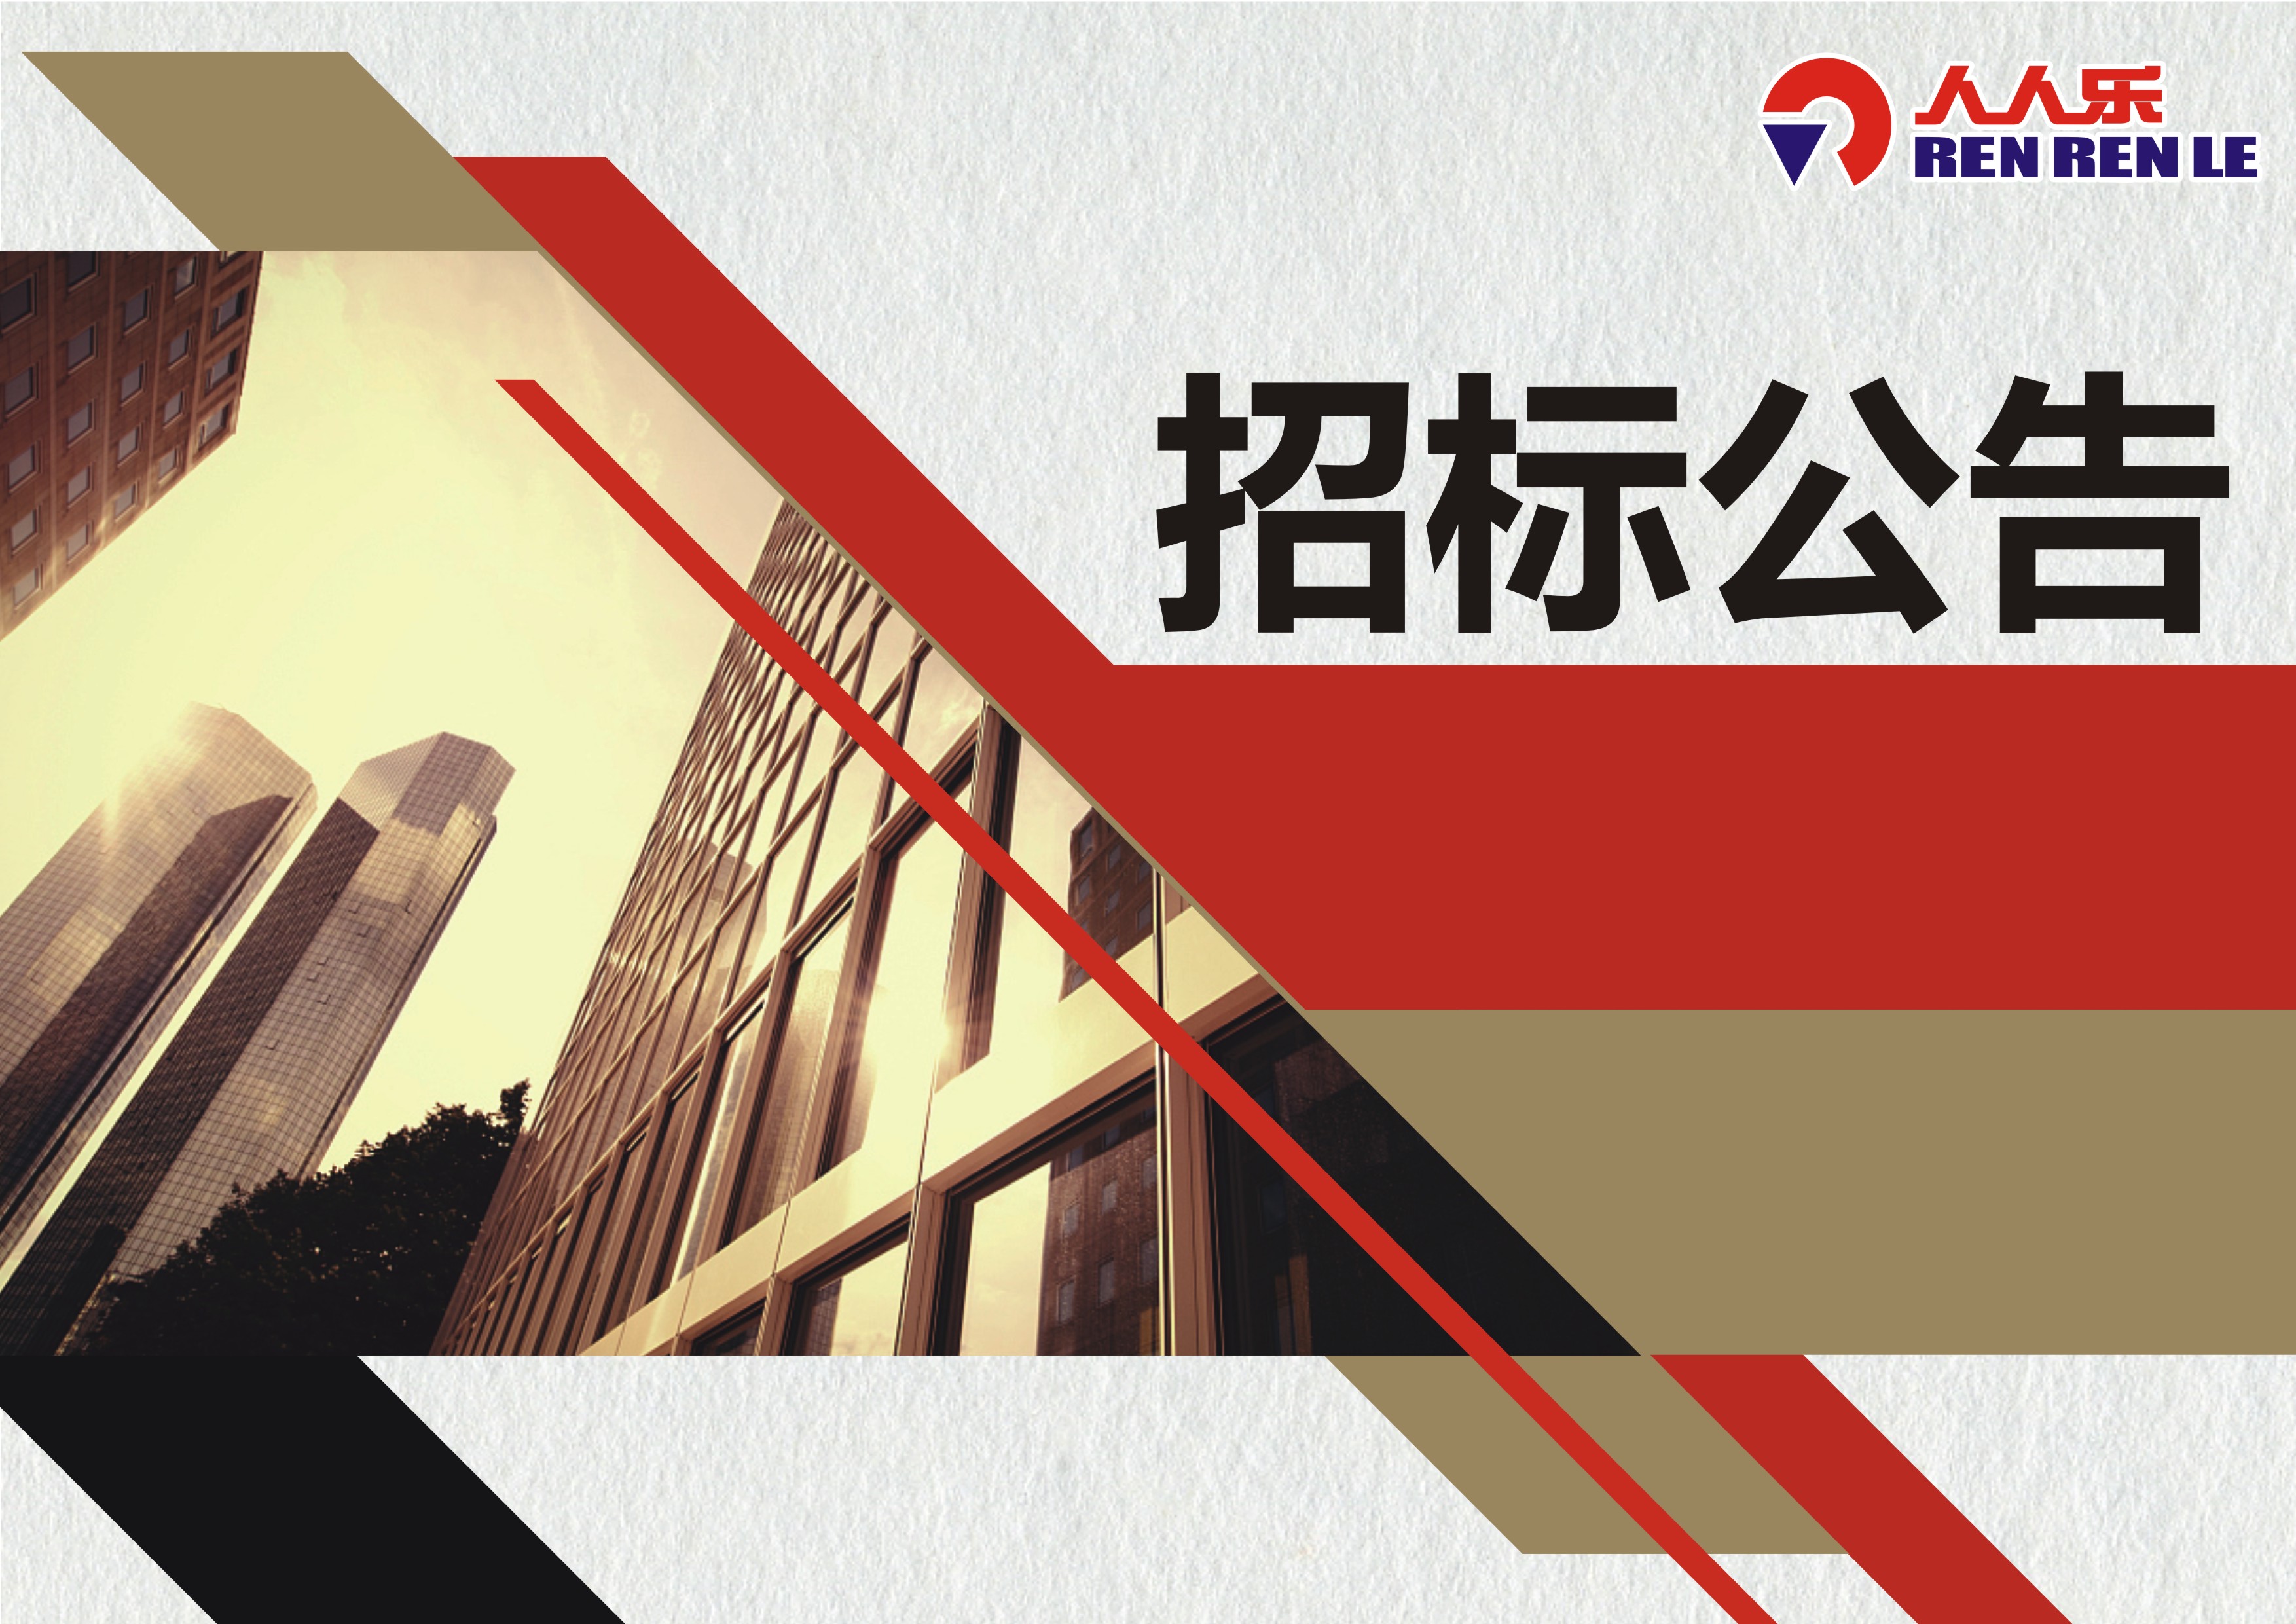 天津市人人乐商业有限公司电锅炉安装及供暖系统改造项目招标书